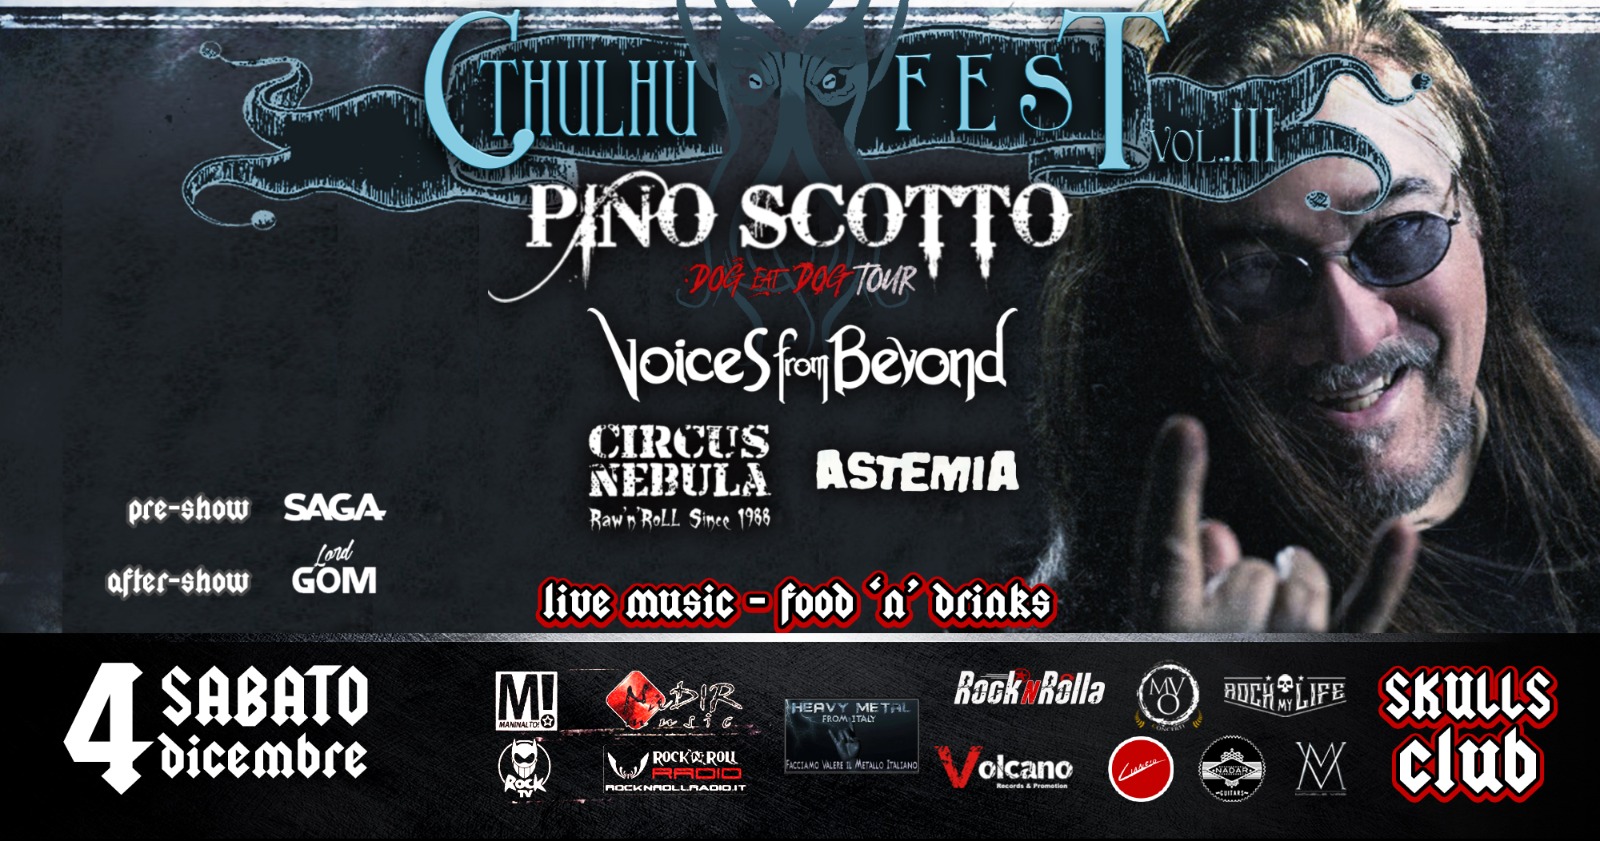 Allo Skulls Club di San Marino torna il festival heavy metal Chtuhlu Fest III. Guest star Pino Scotto!